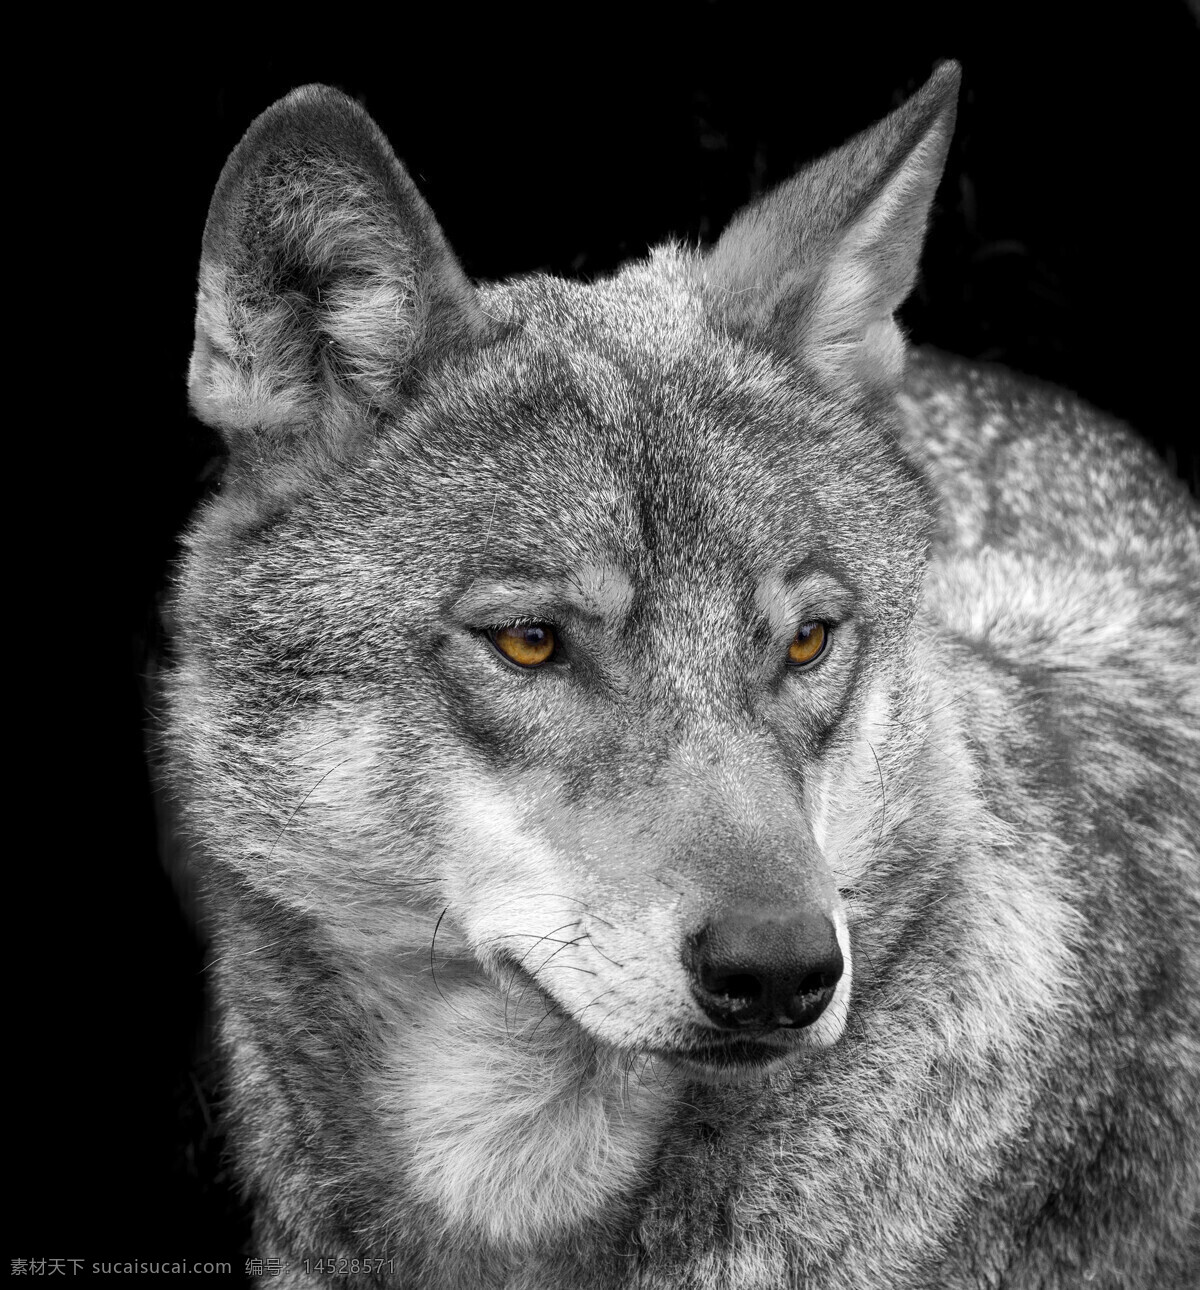 雪山 里 狼 动物 高清 冬天 狼特写 雪地 野狼 野生动物 动物世界 动物摄影 陆地动物 动物图片 黑色